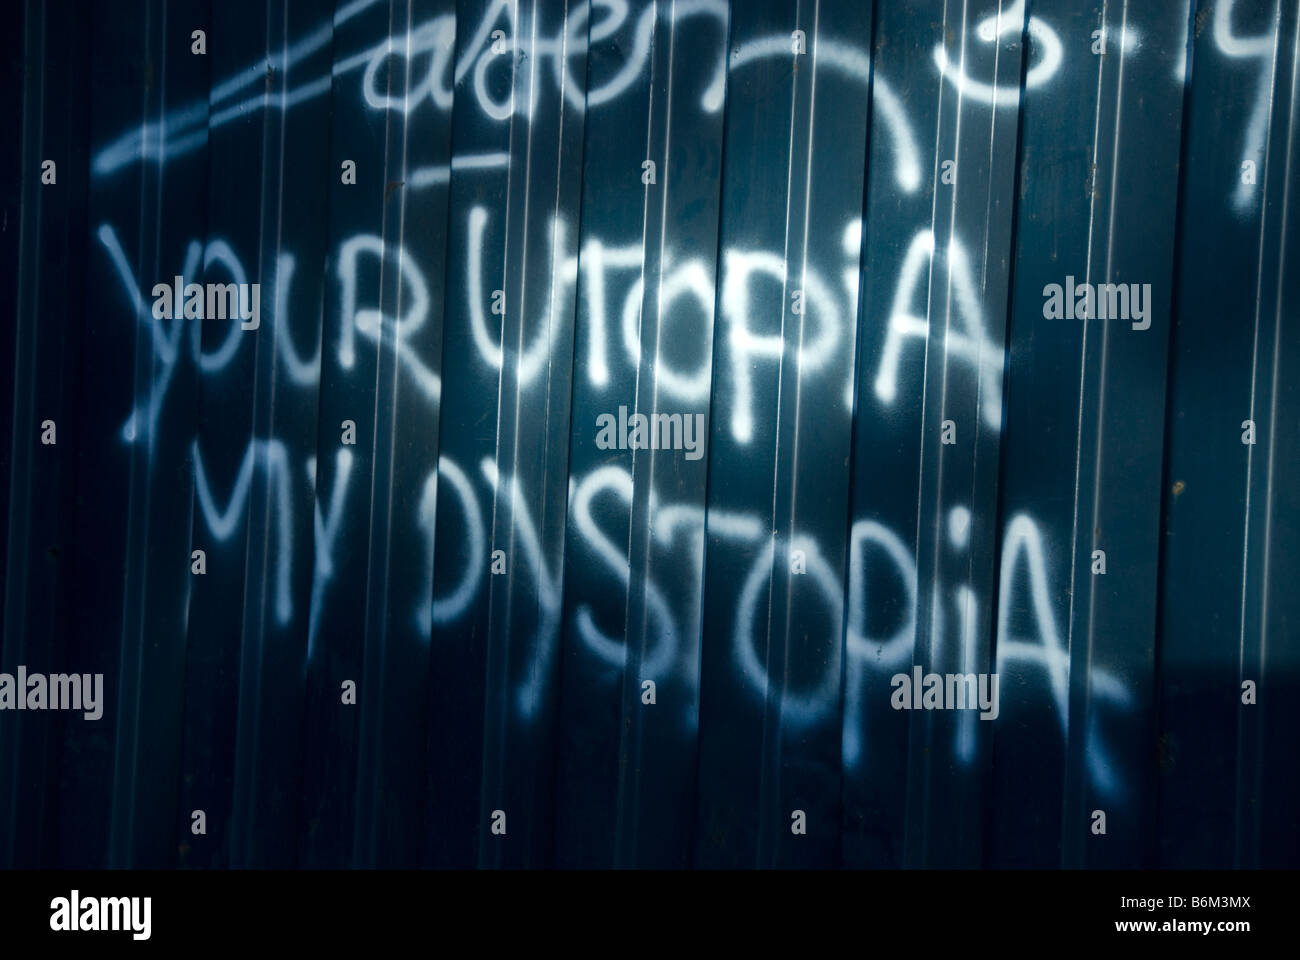 Dezember 2008 London Shoreditch Schrift an der Wand Ihre Utopie meine Distopia Stockfoto